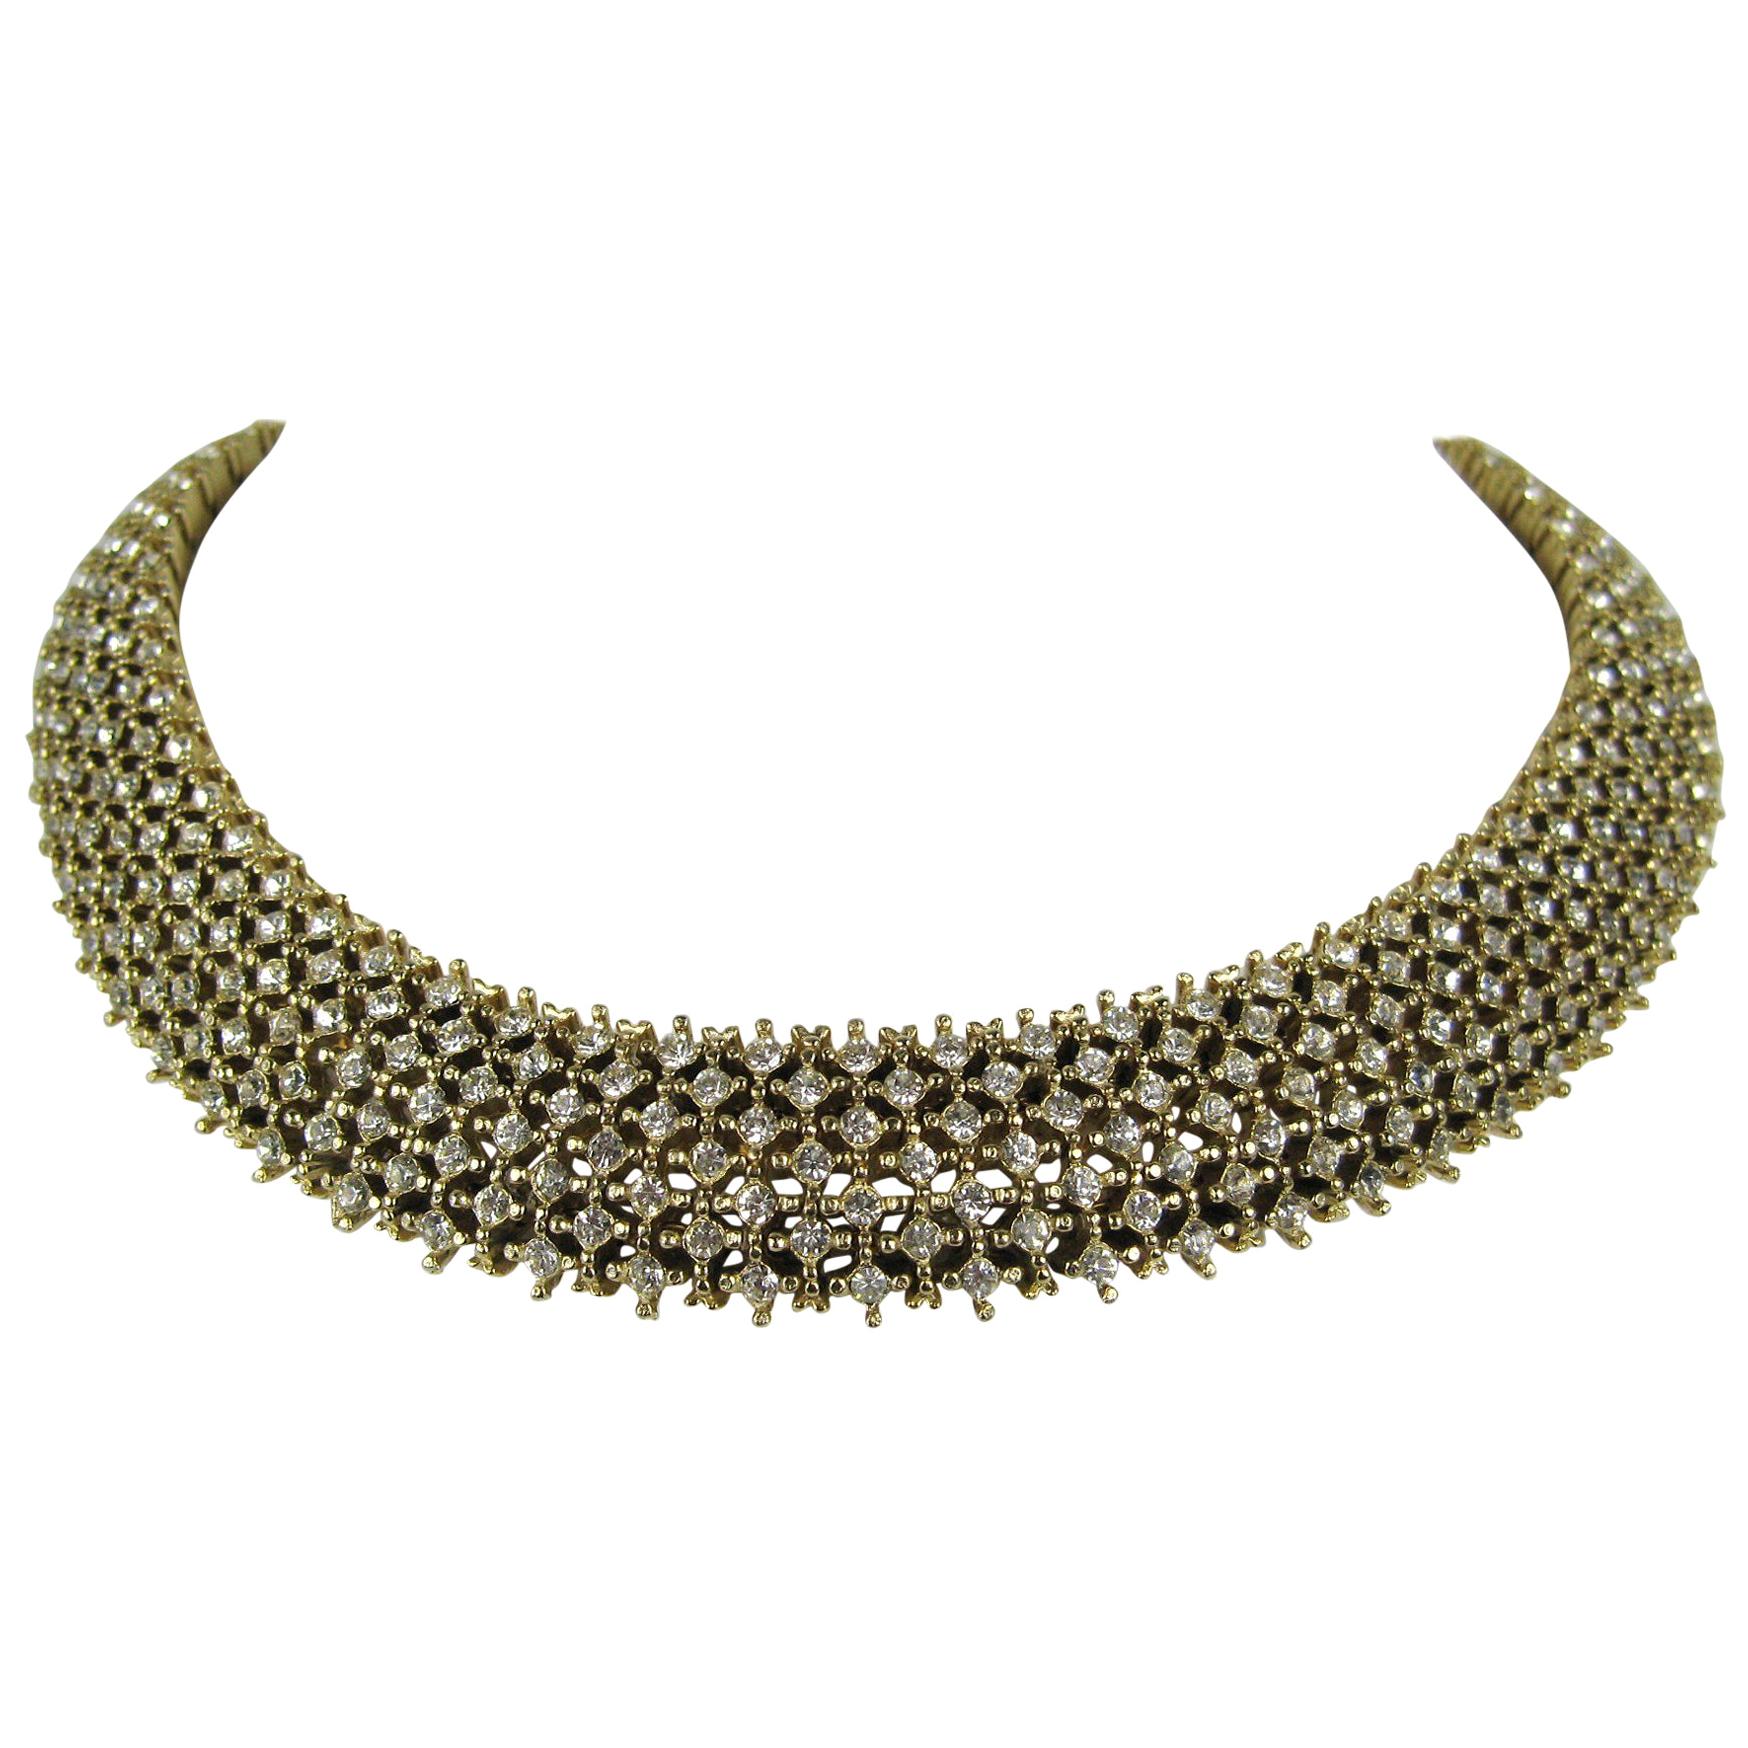  Les Bernard Encrusted Crystal Choker Necklace Never Worn - Vintage 